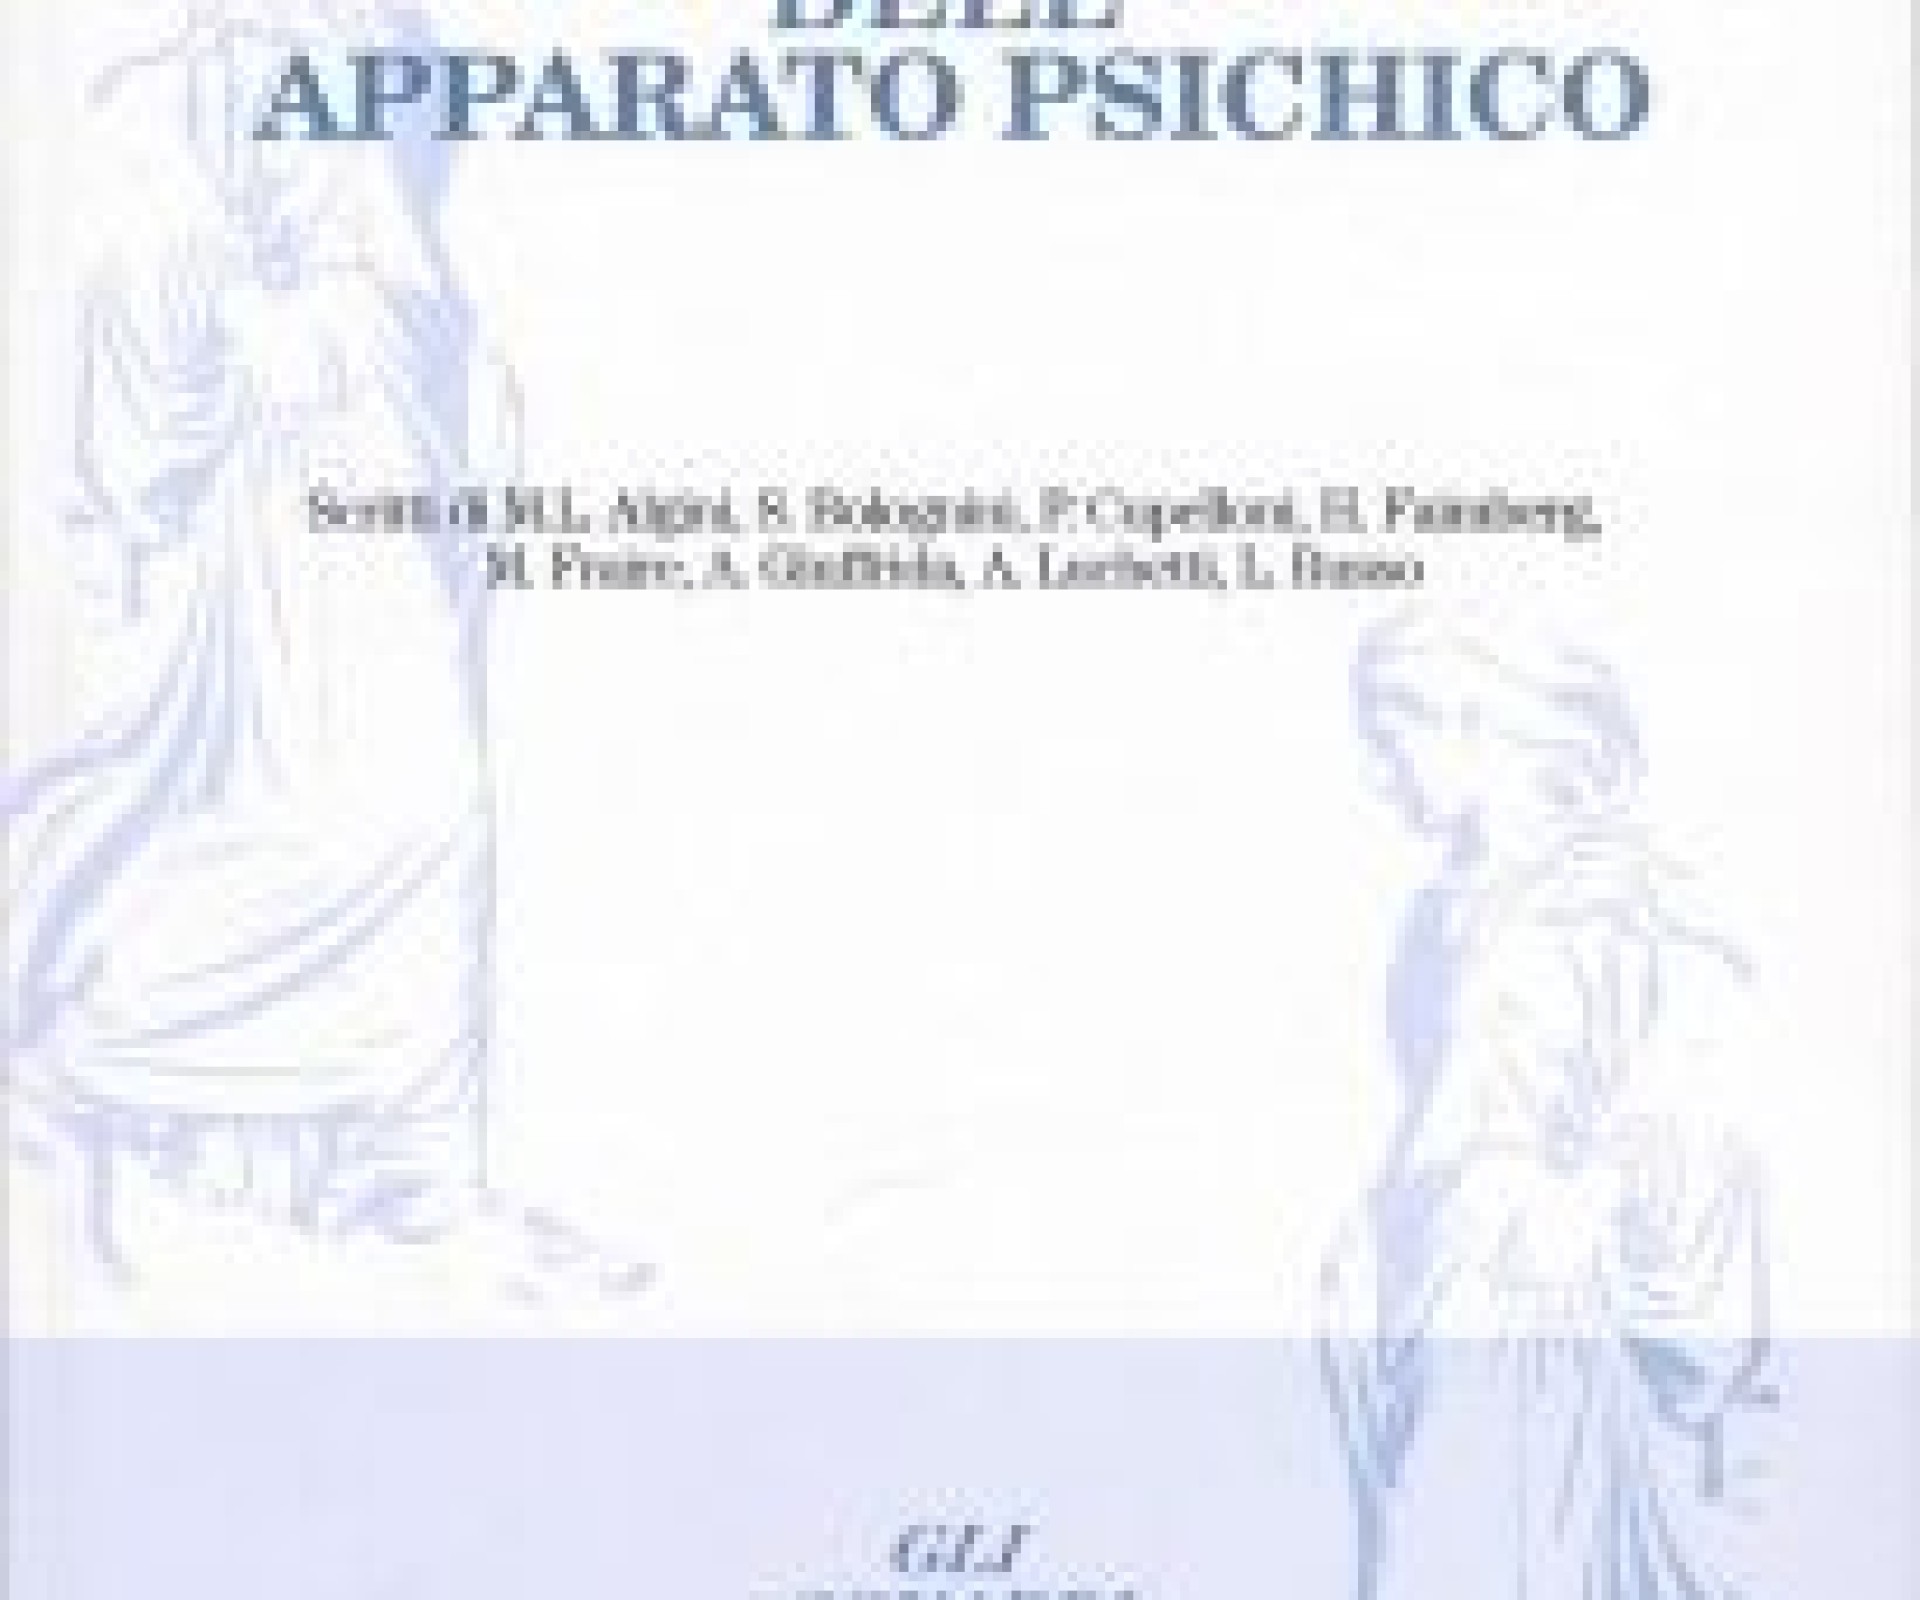 Quaderni del Centro Psicoanalitico di Roma n.1